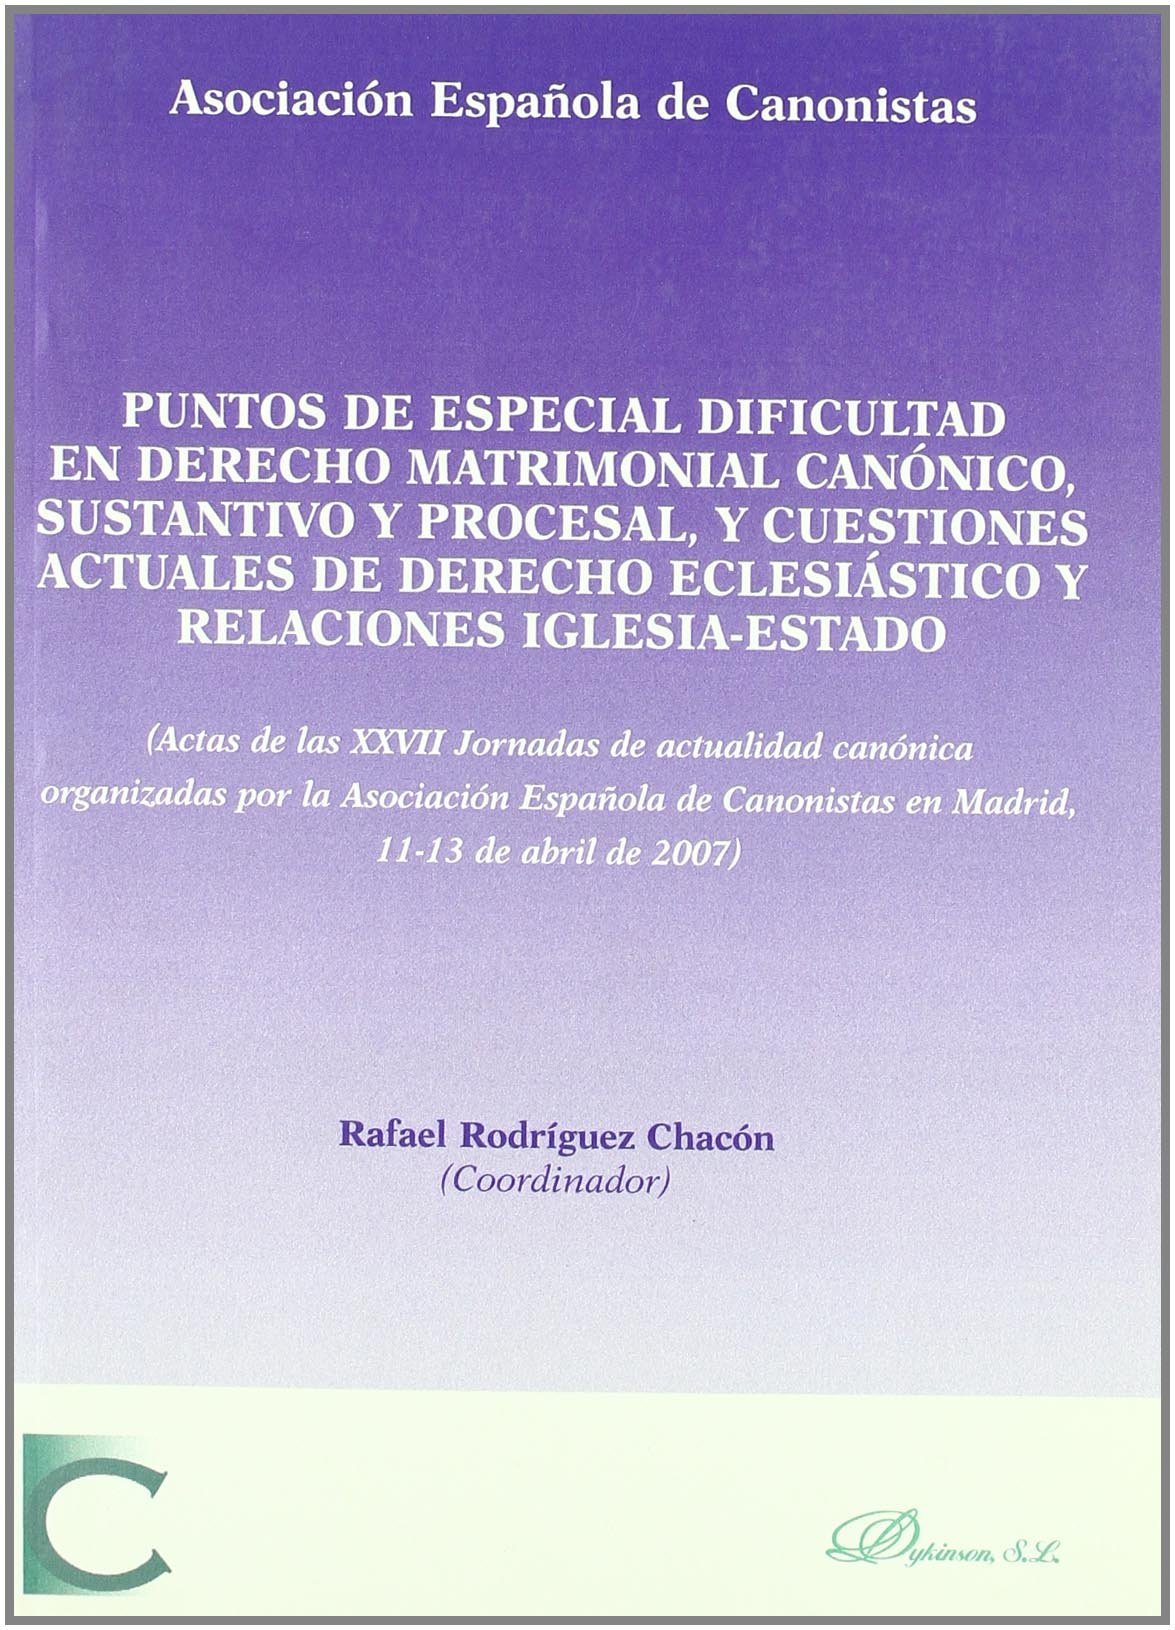 Imagen de portada del libro Puntos de especial dificultad en derecho matrimonial canónico, sustantivo y procesal